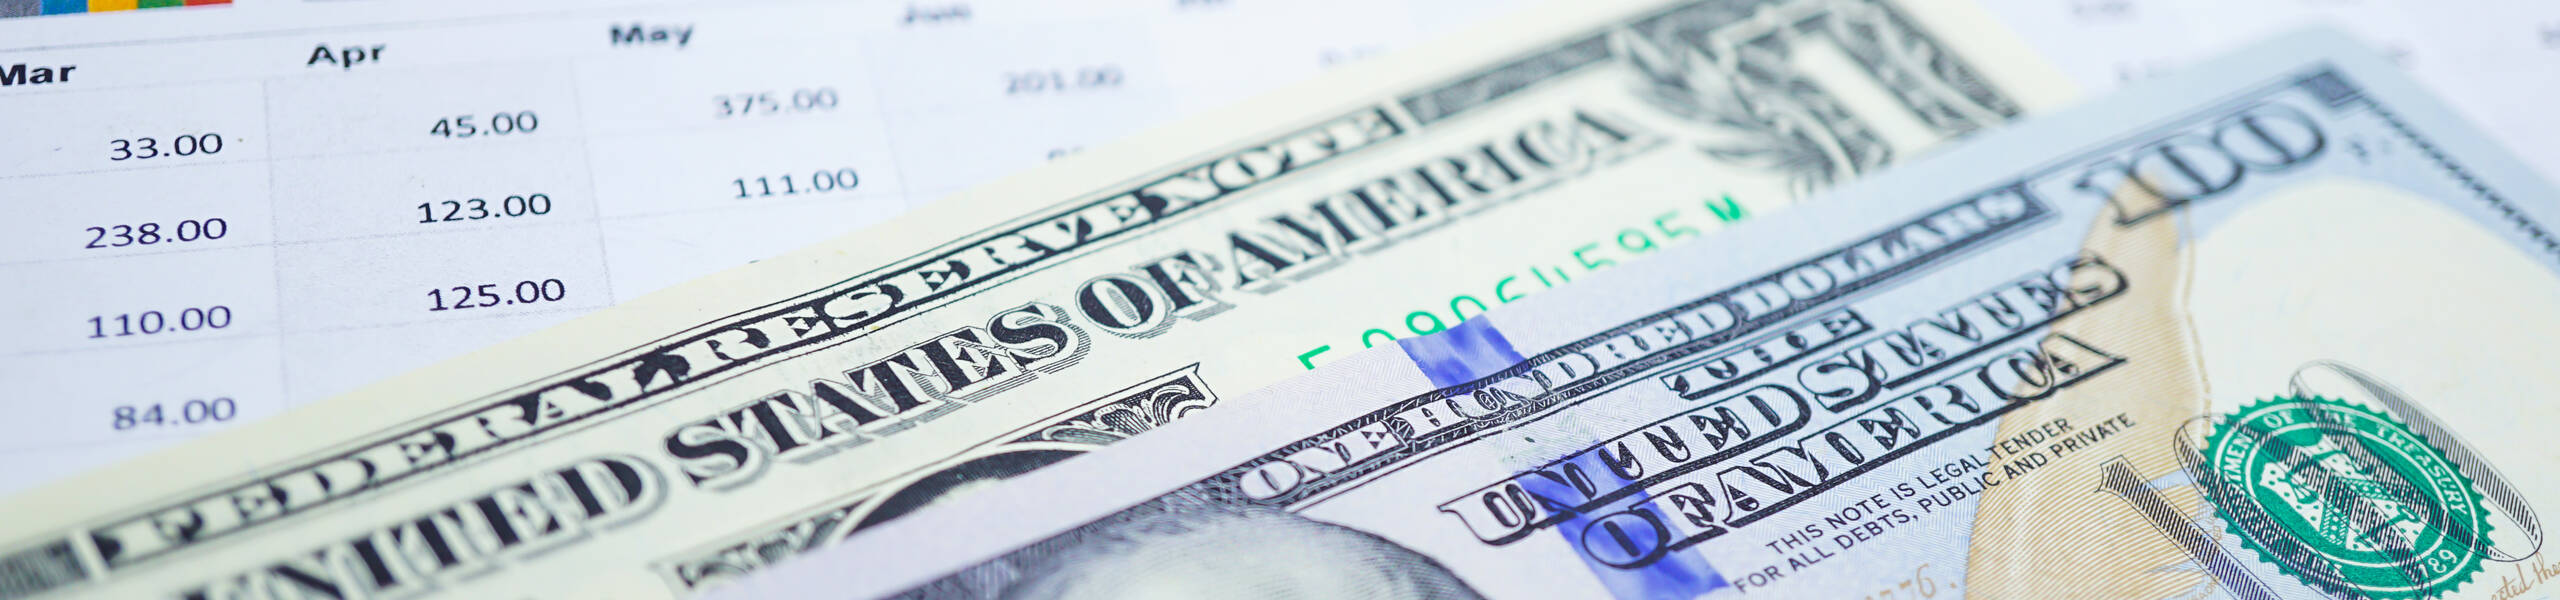 Chỉ số đô la Mỹ tăng trong ngắn hạn với mục tiêu 106.78